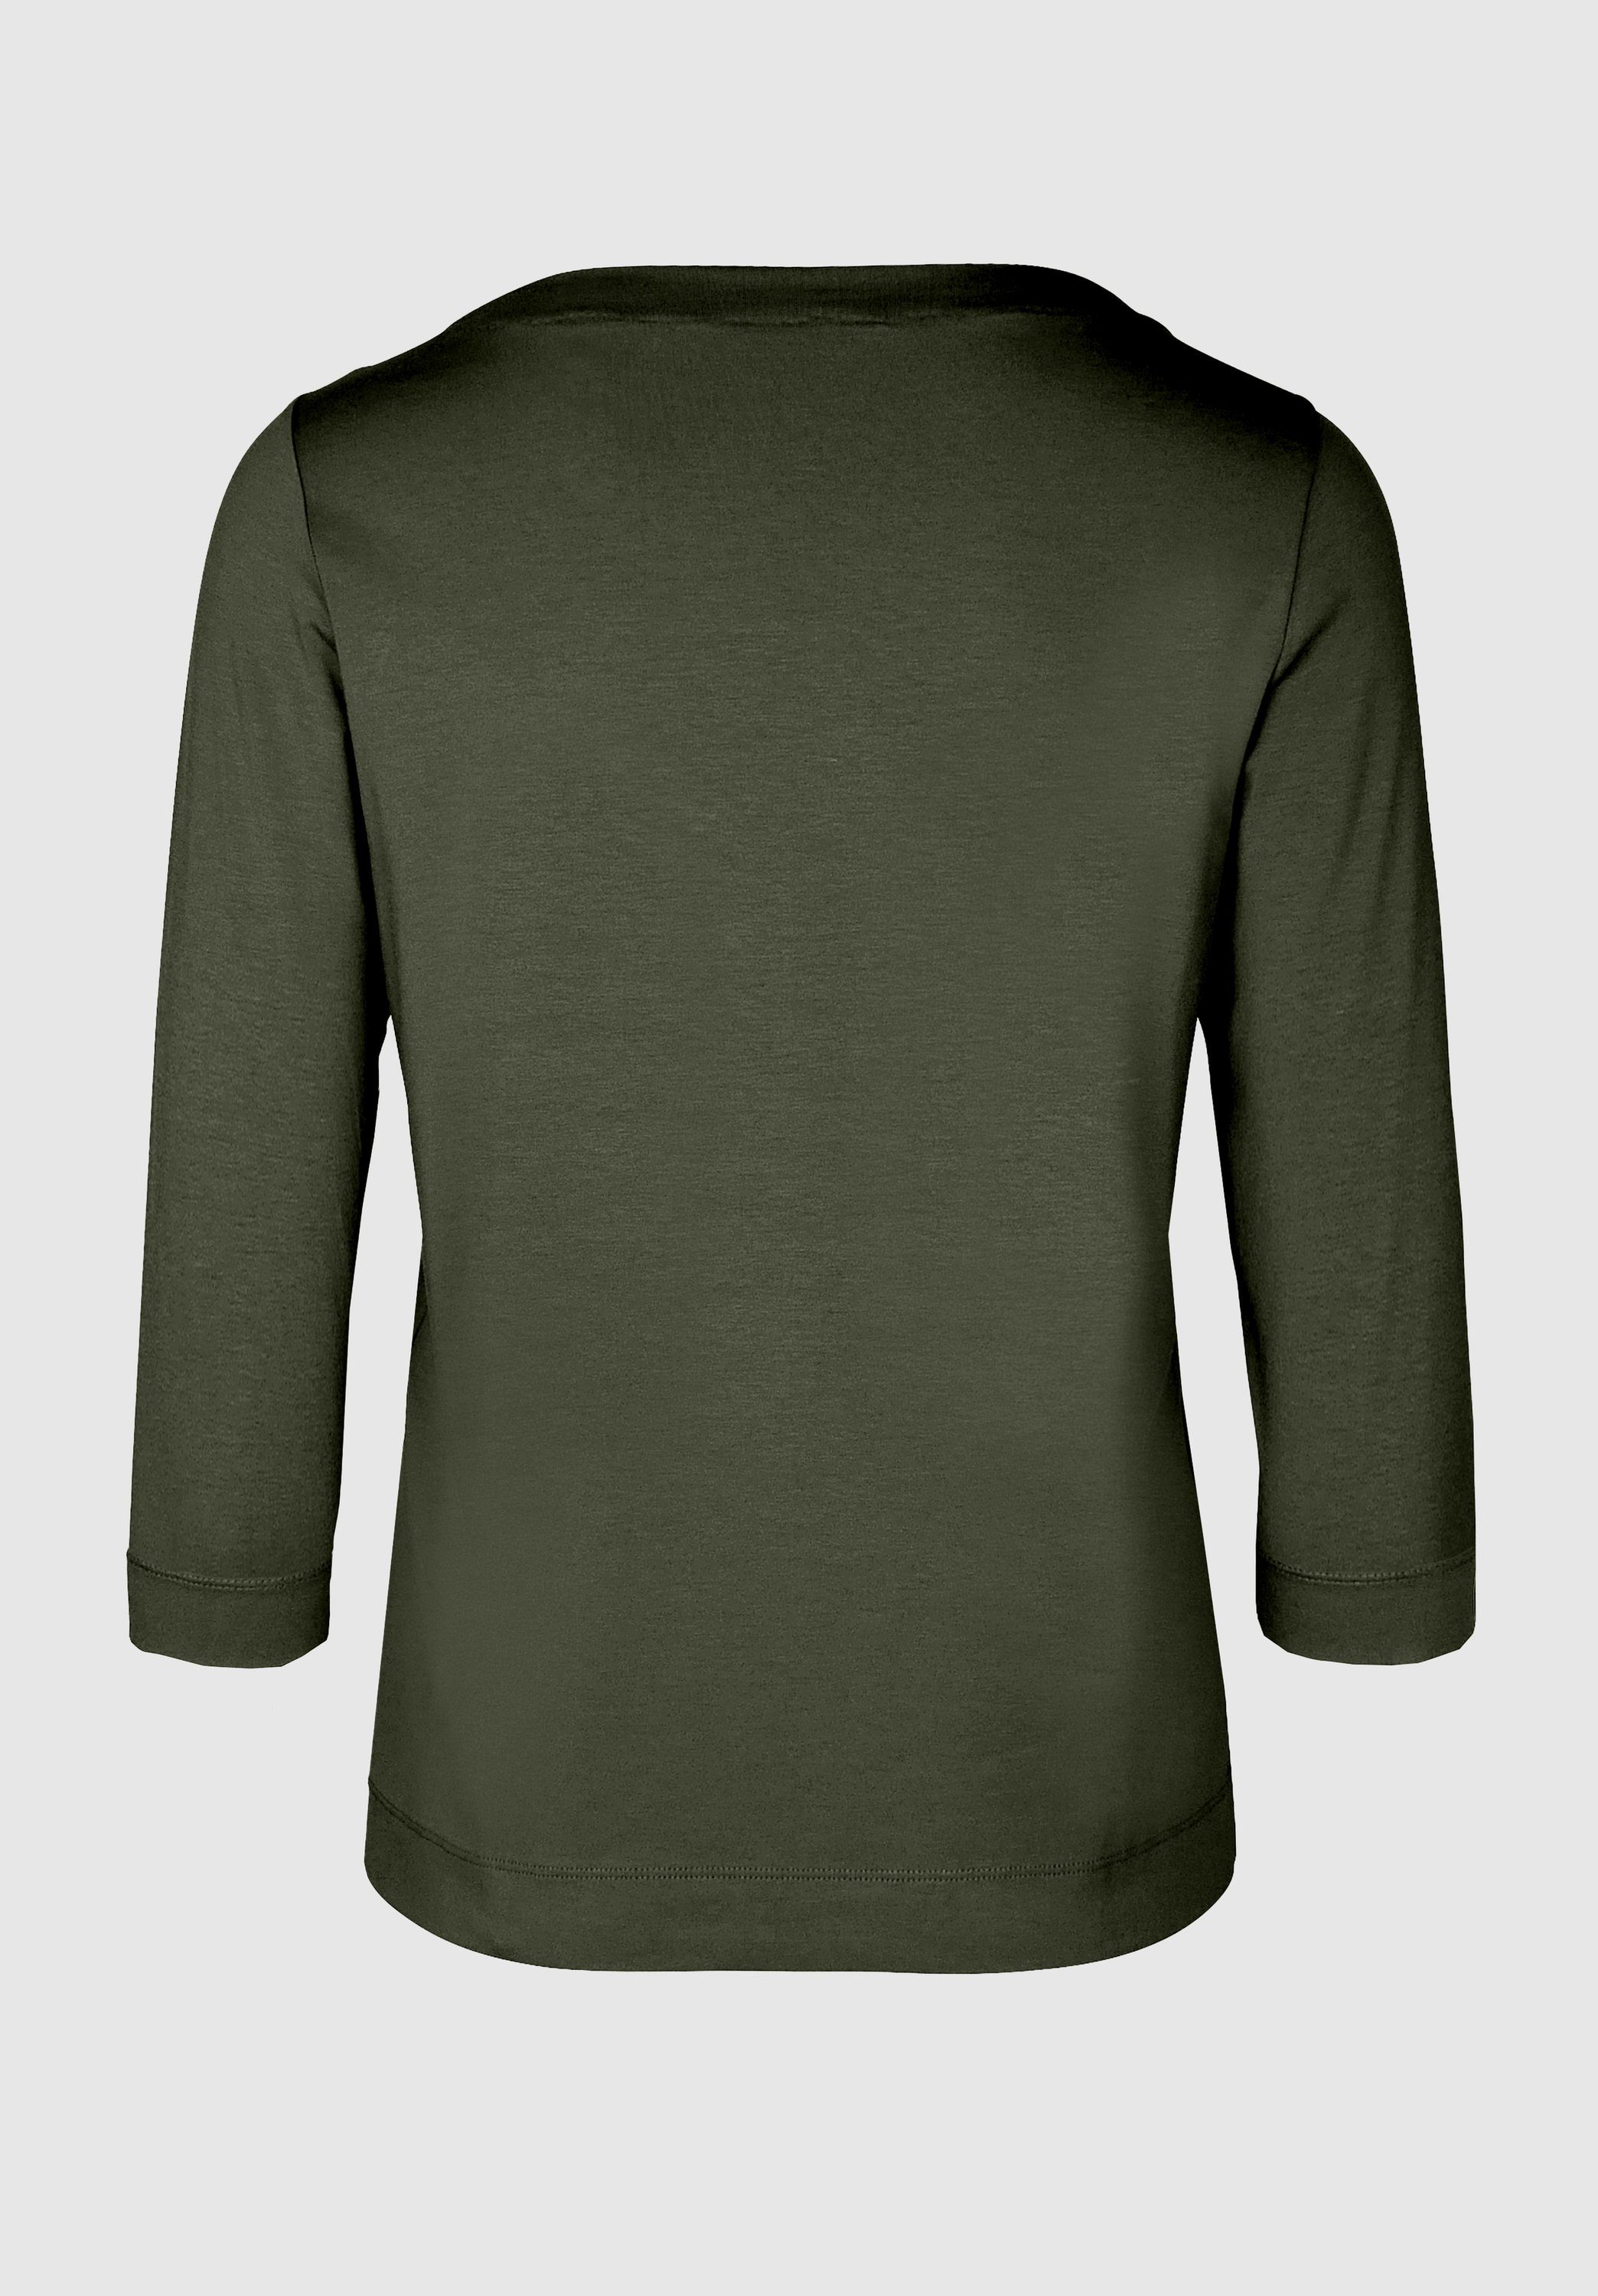 bianca 3/4-Arm-Shirt Look und in Trendfarben modernem cypress DIELLA angesagten